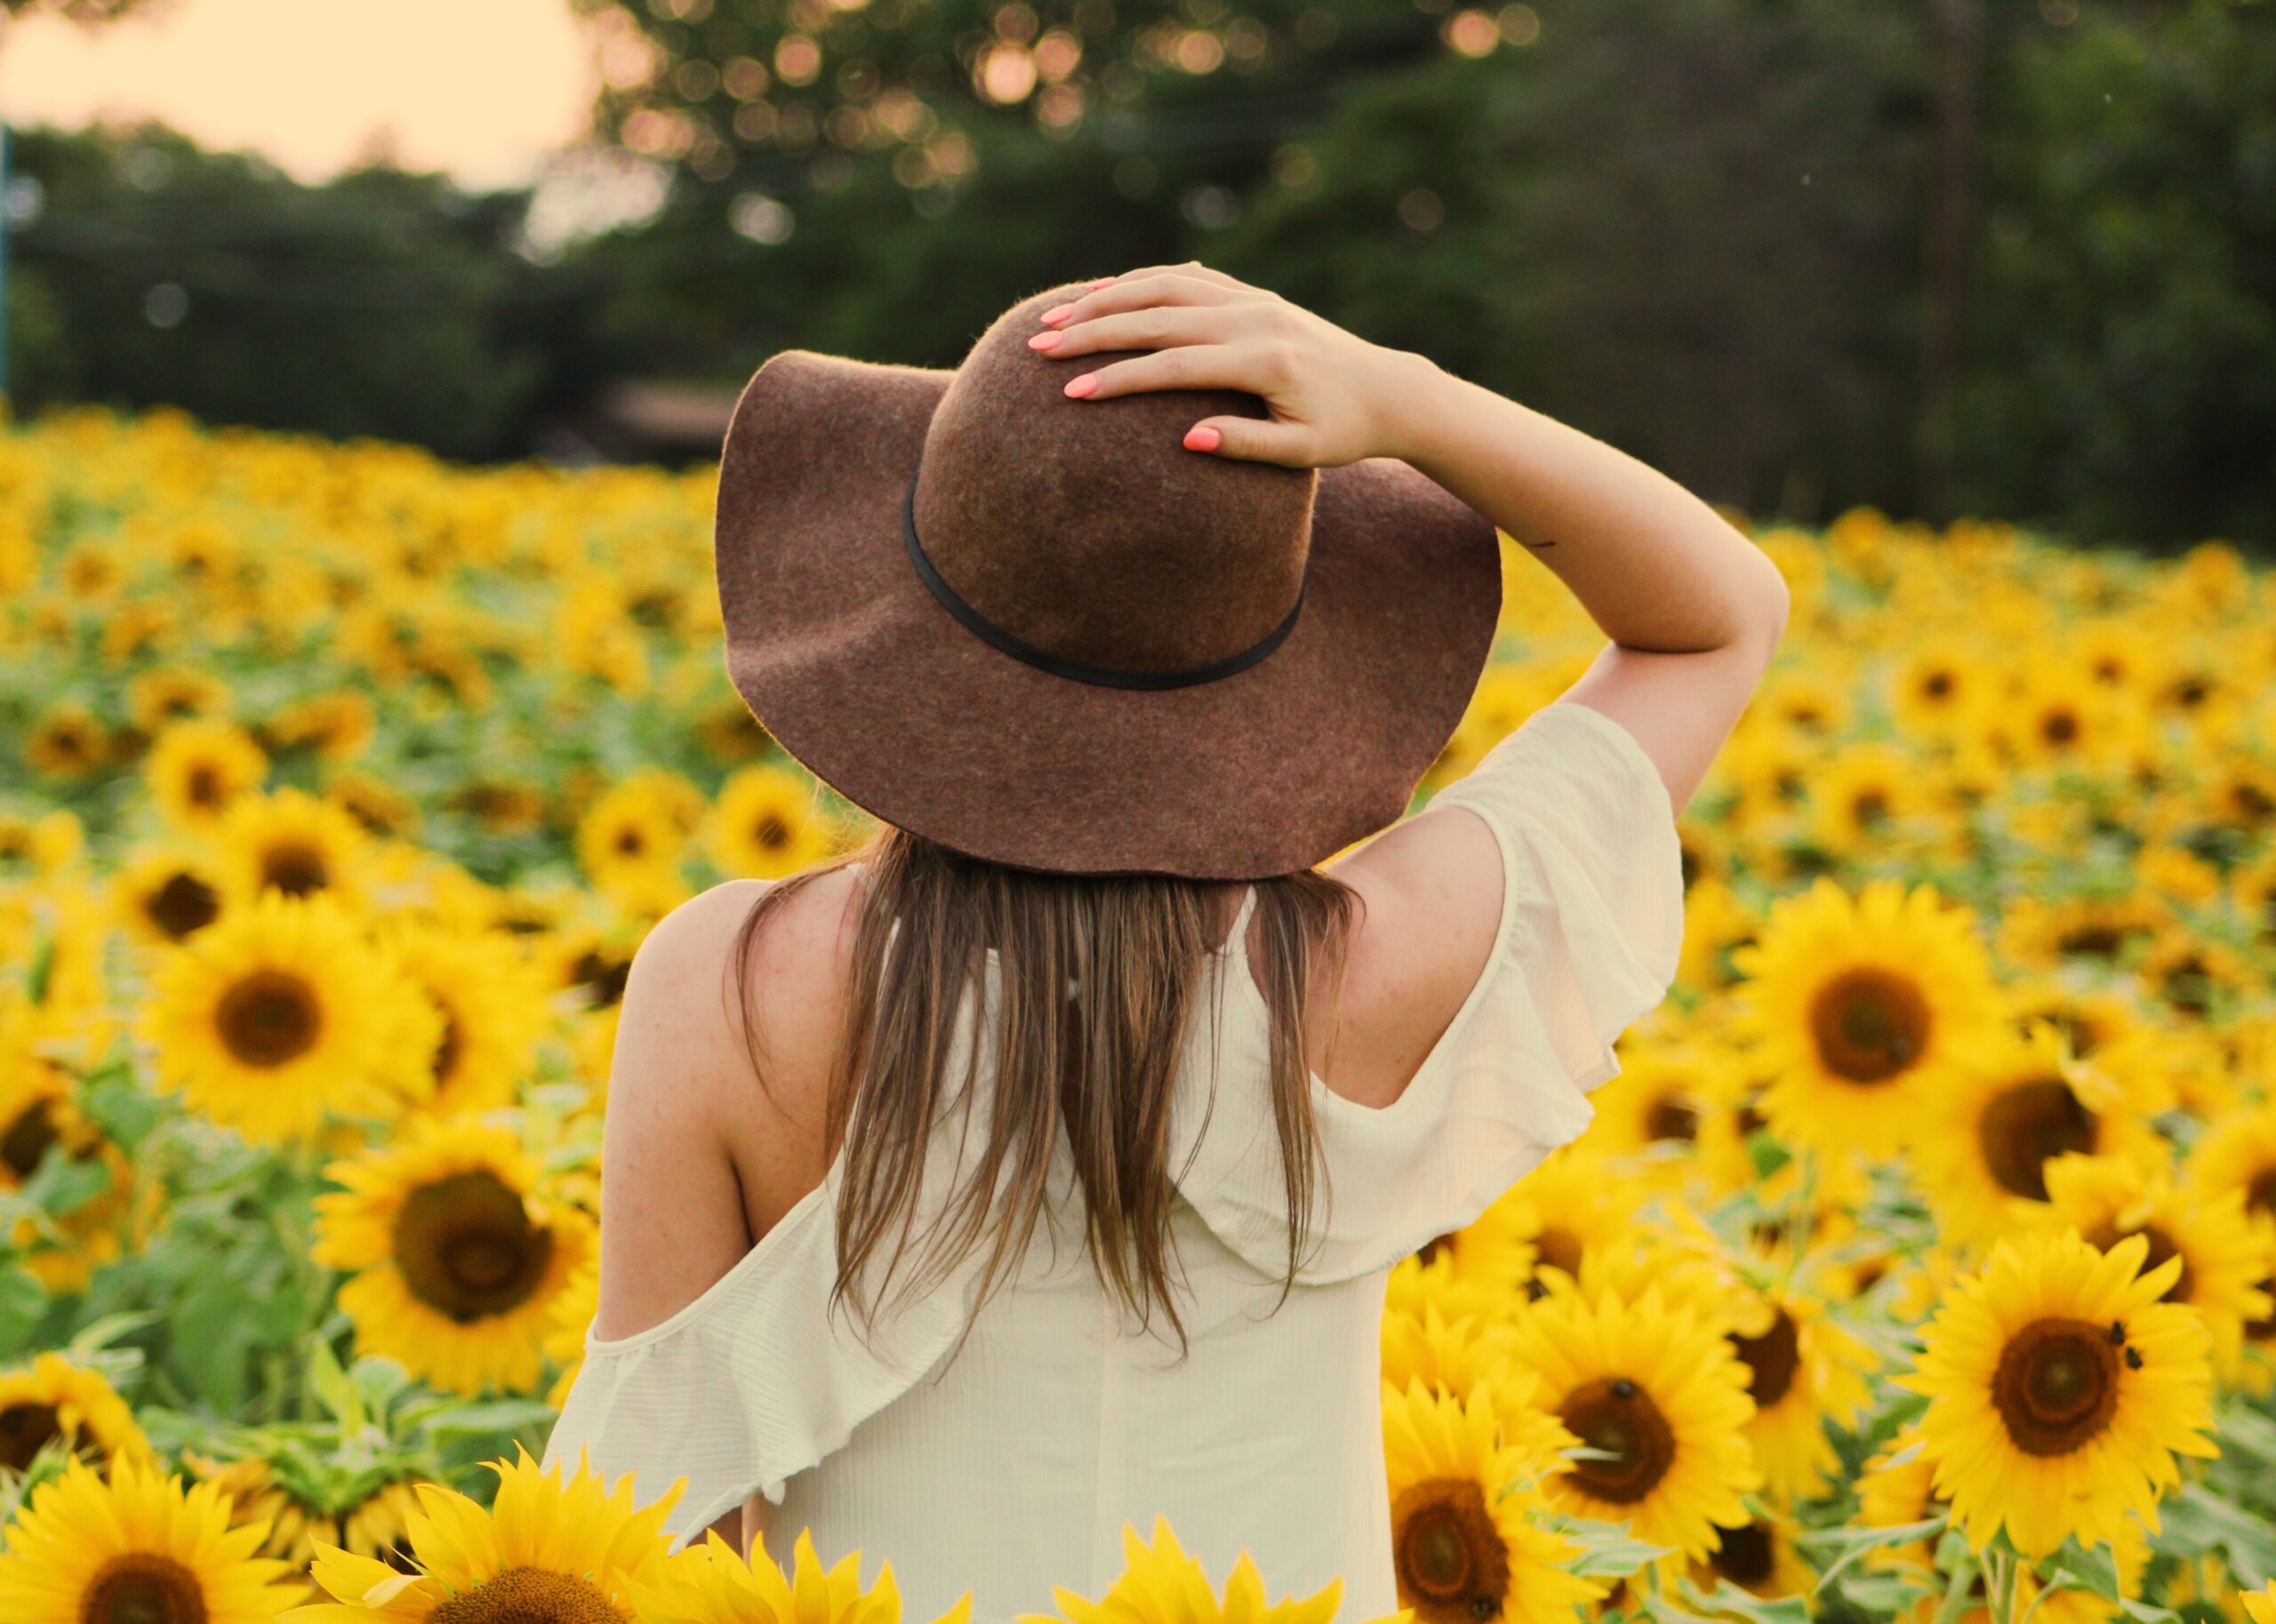 una mujer se agarra el sombrero que lleva en la cabeza, mientras admira la naturaleza que tiene en frente, un campo lleno de girasoles